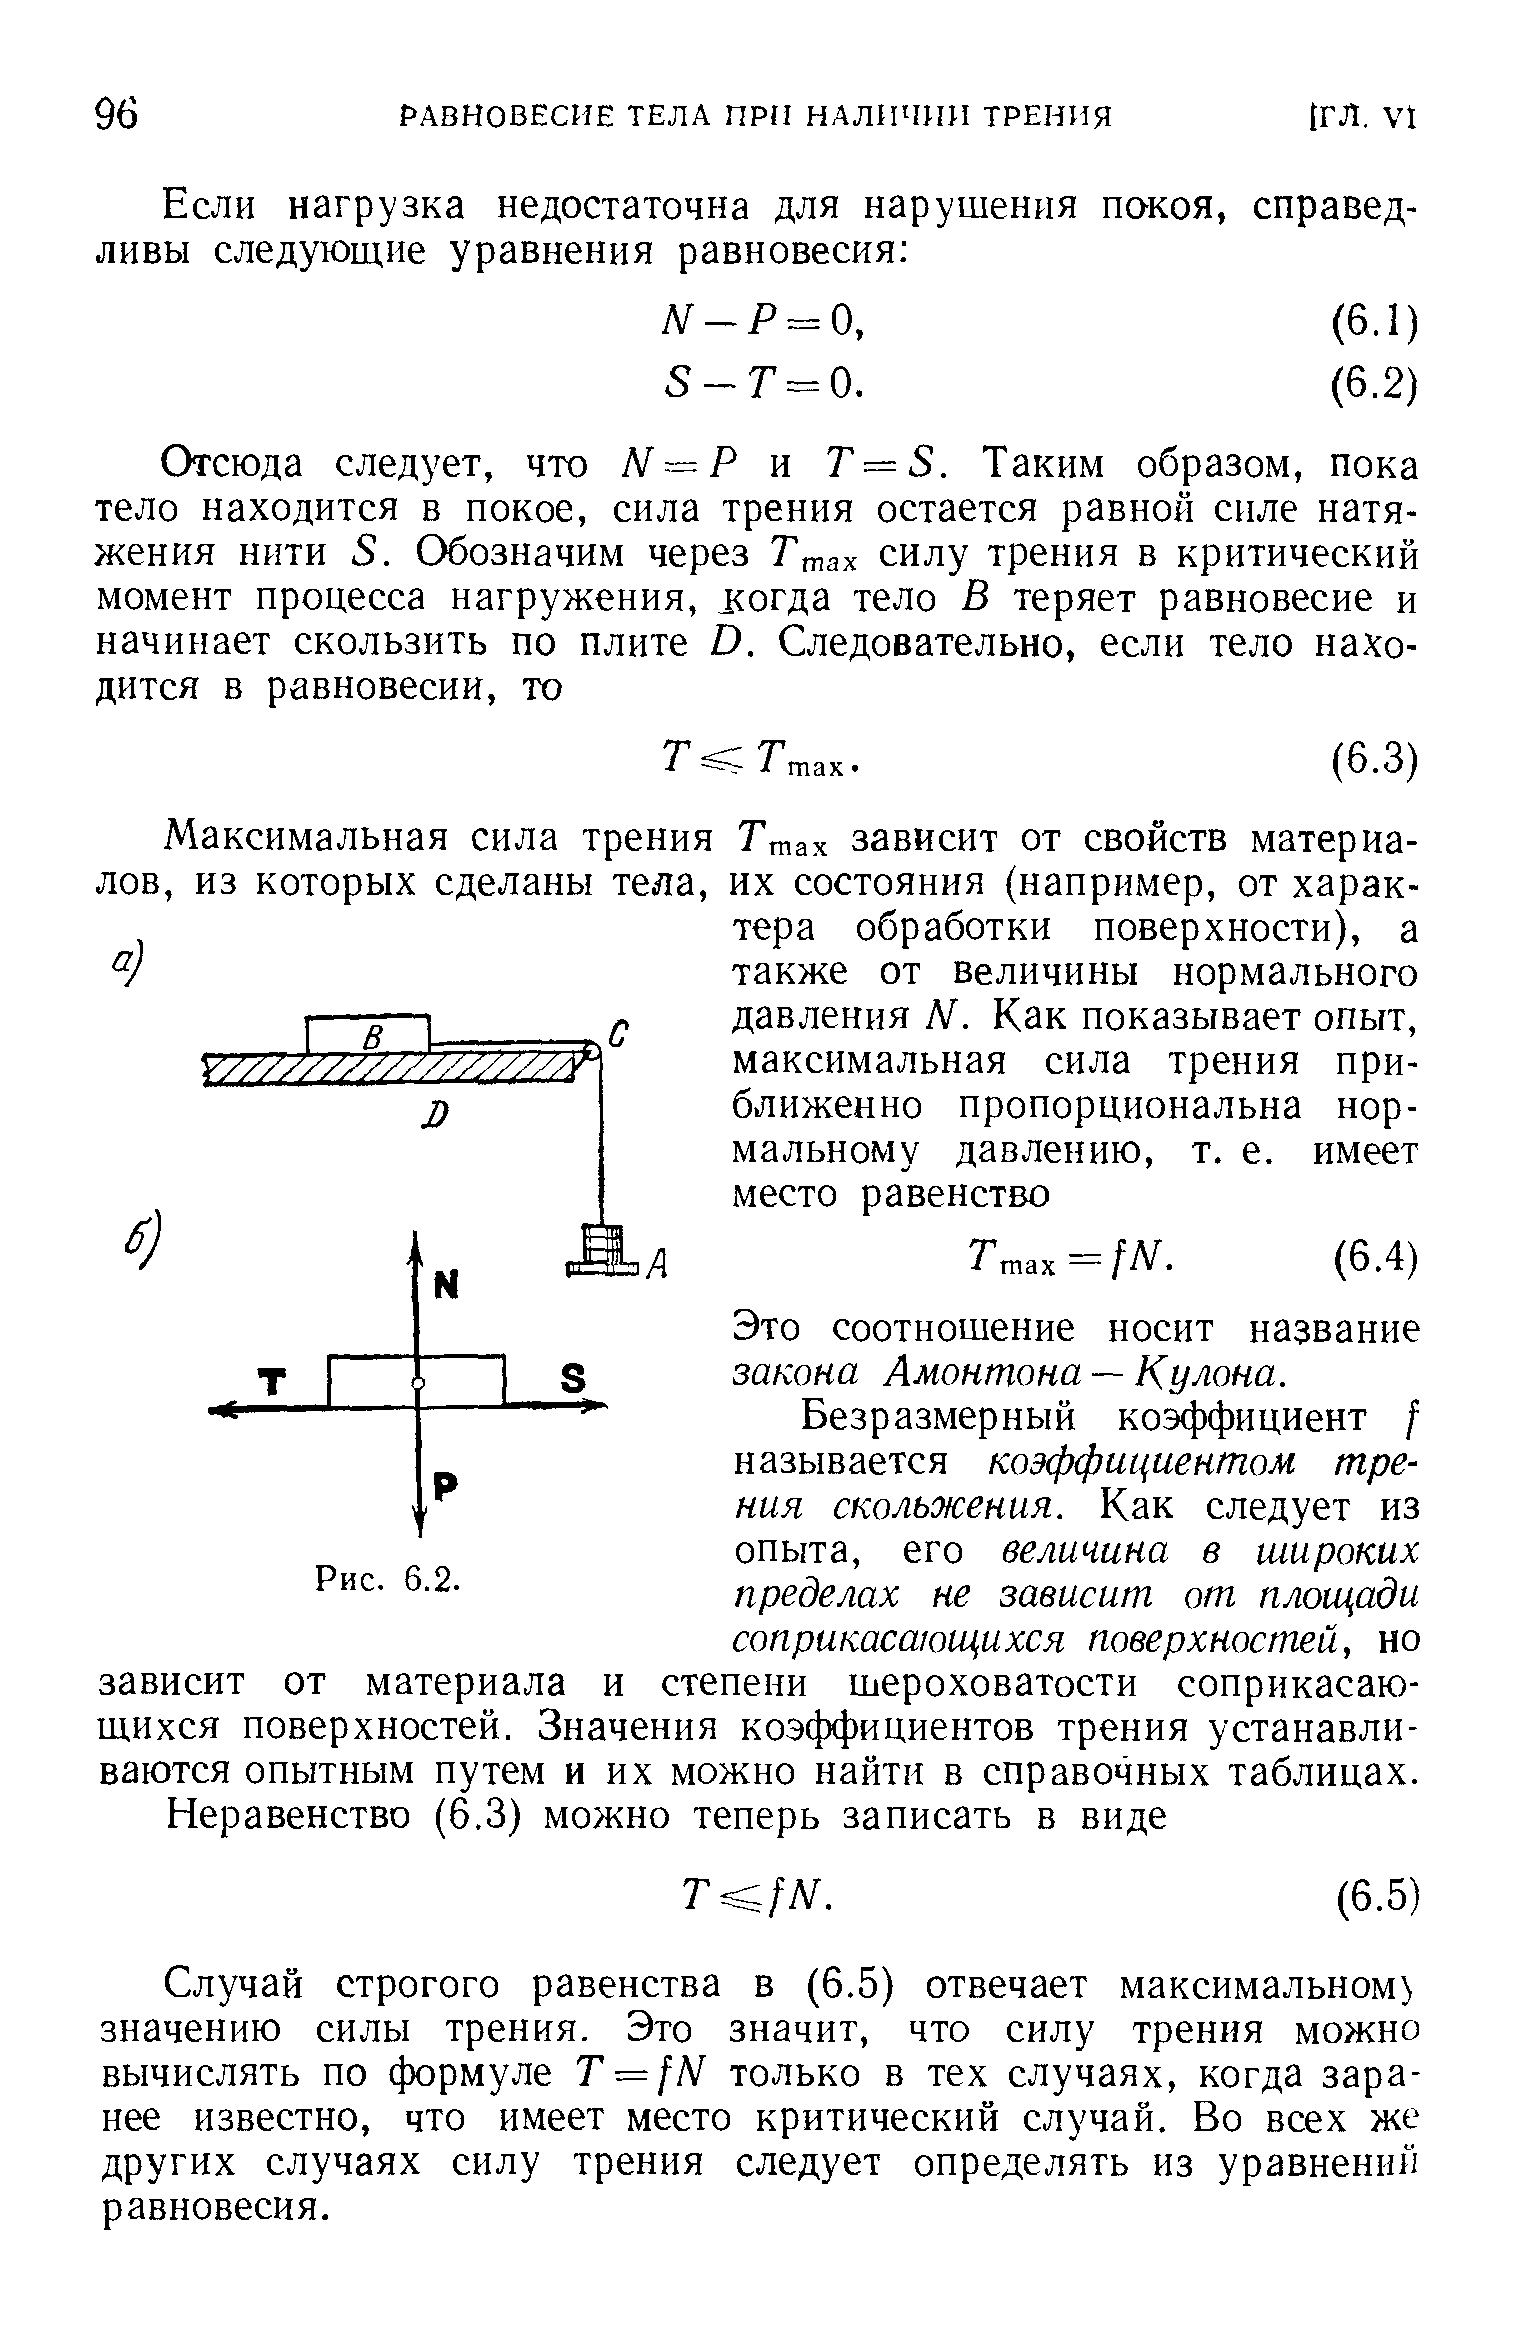 Закон кулона Амонтона формула